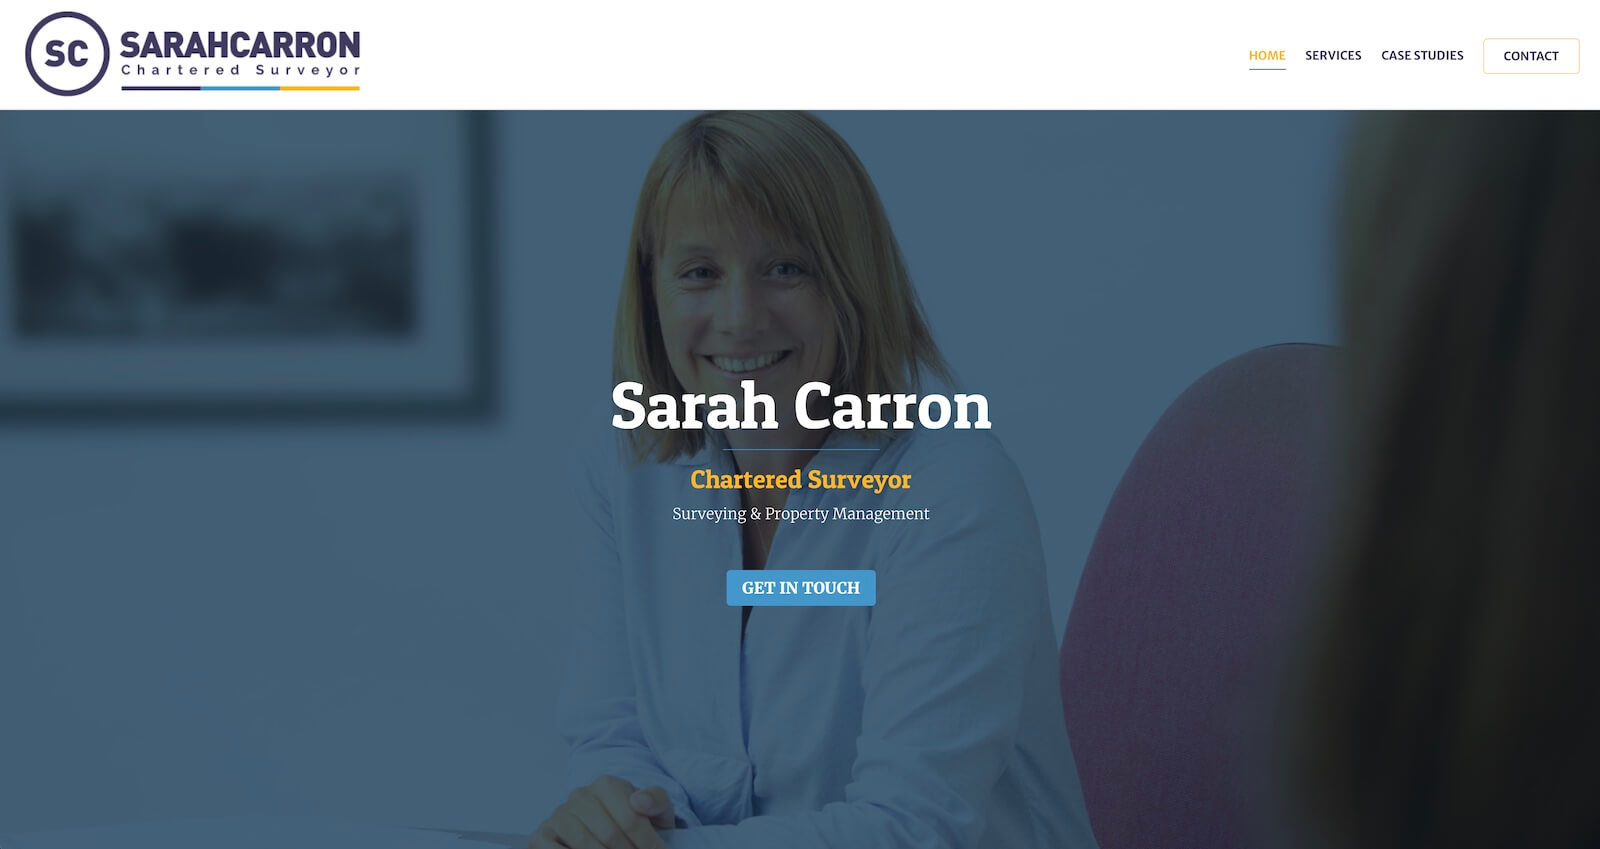 Sarah Carron Website Design